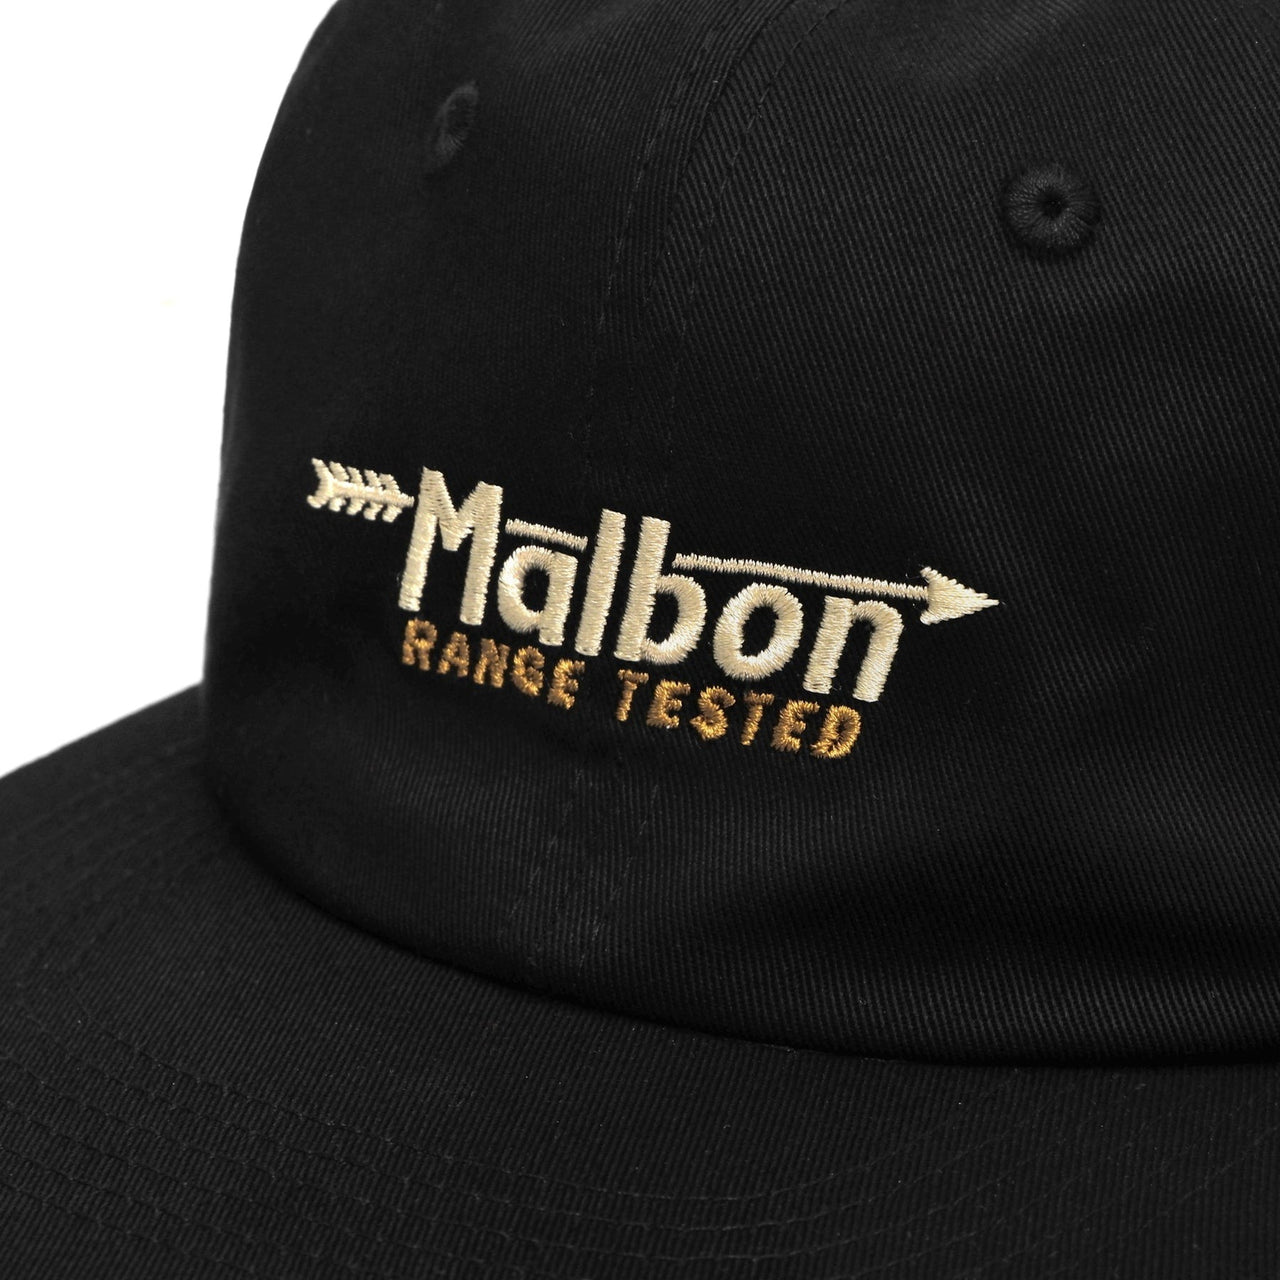 Malbon Range Tested Painters Hat - Aged Black